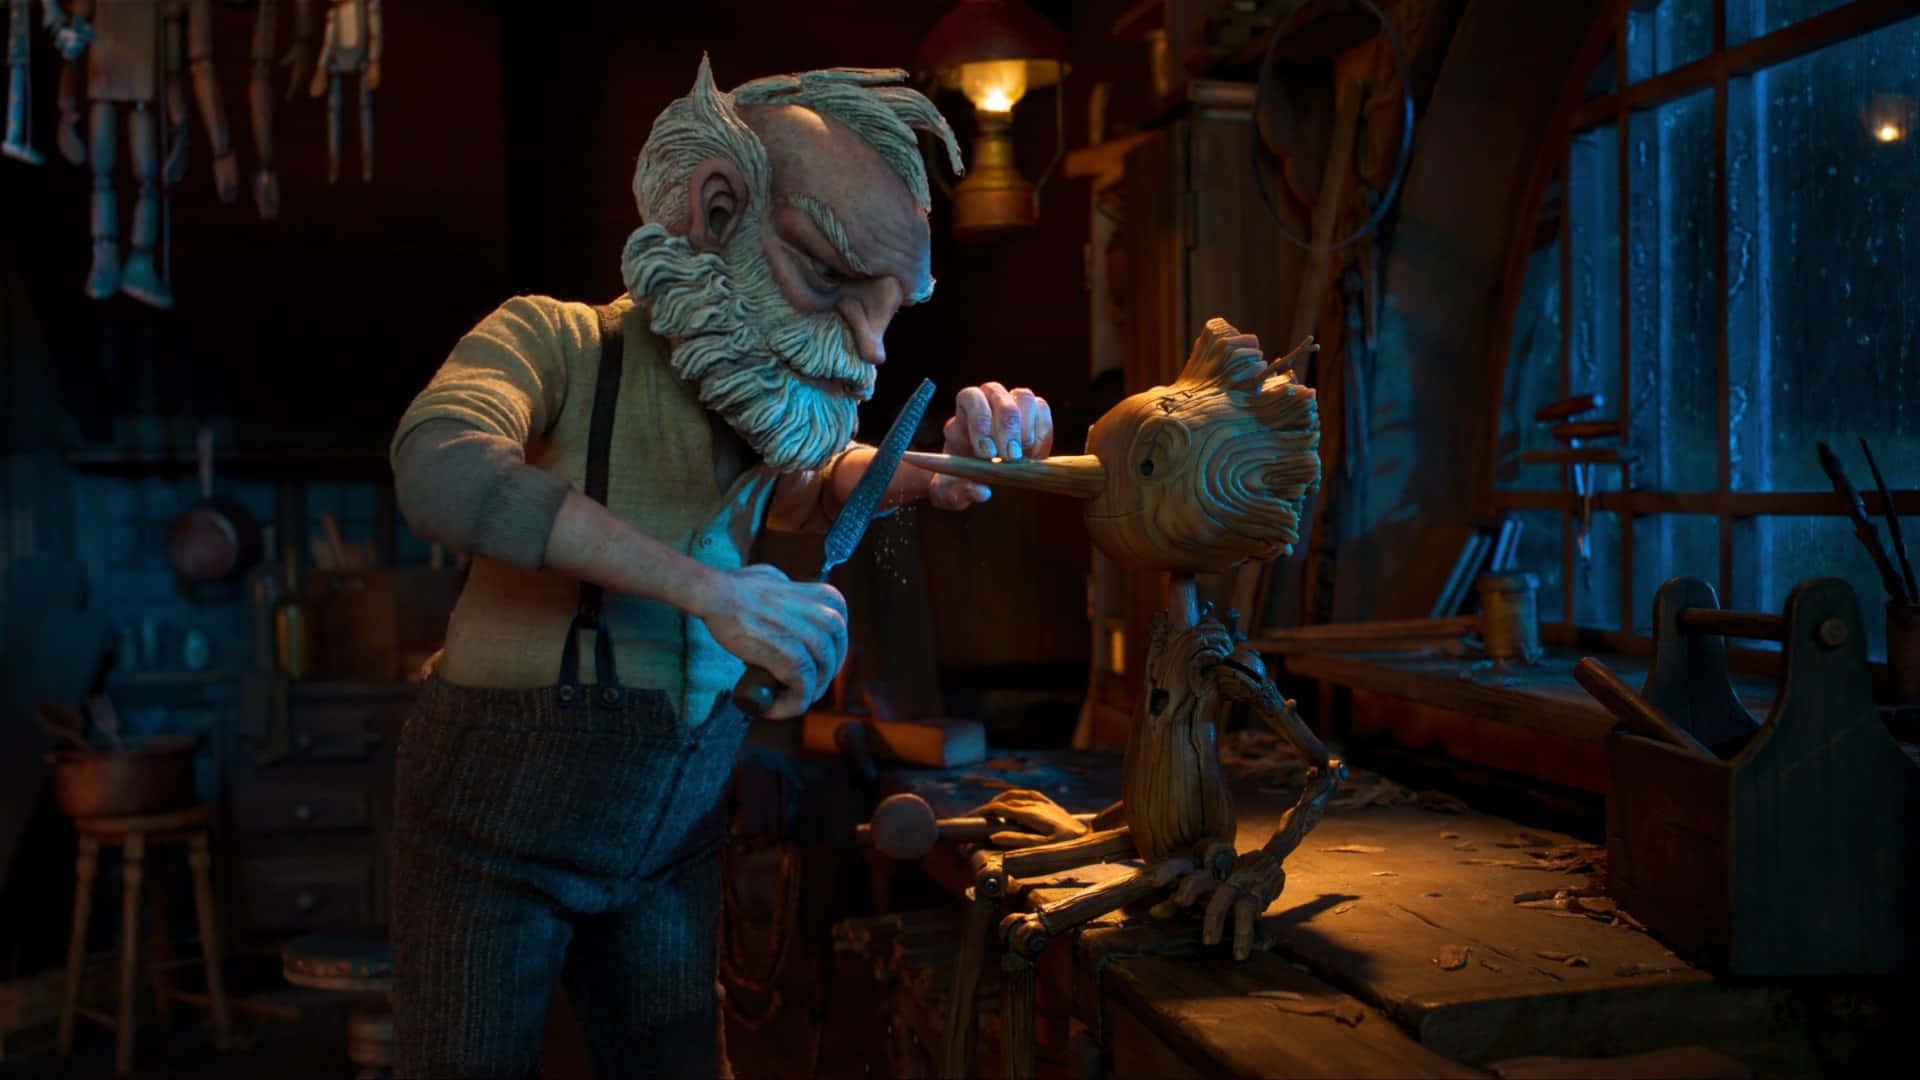 Guillermo Del Toro's Pinocchio in a Magical, Dark World Wallpaper